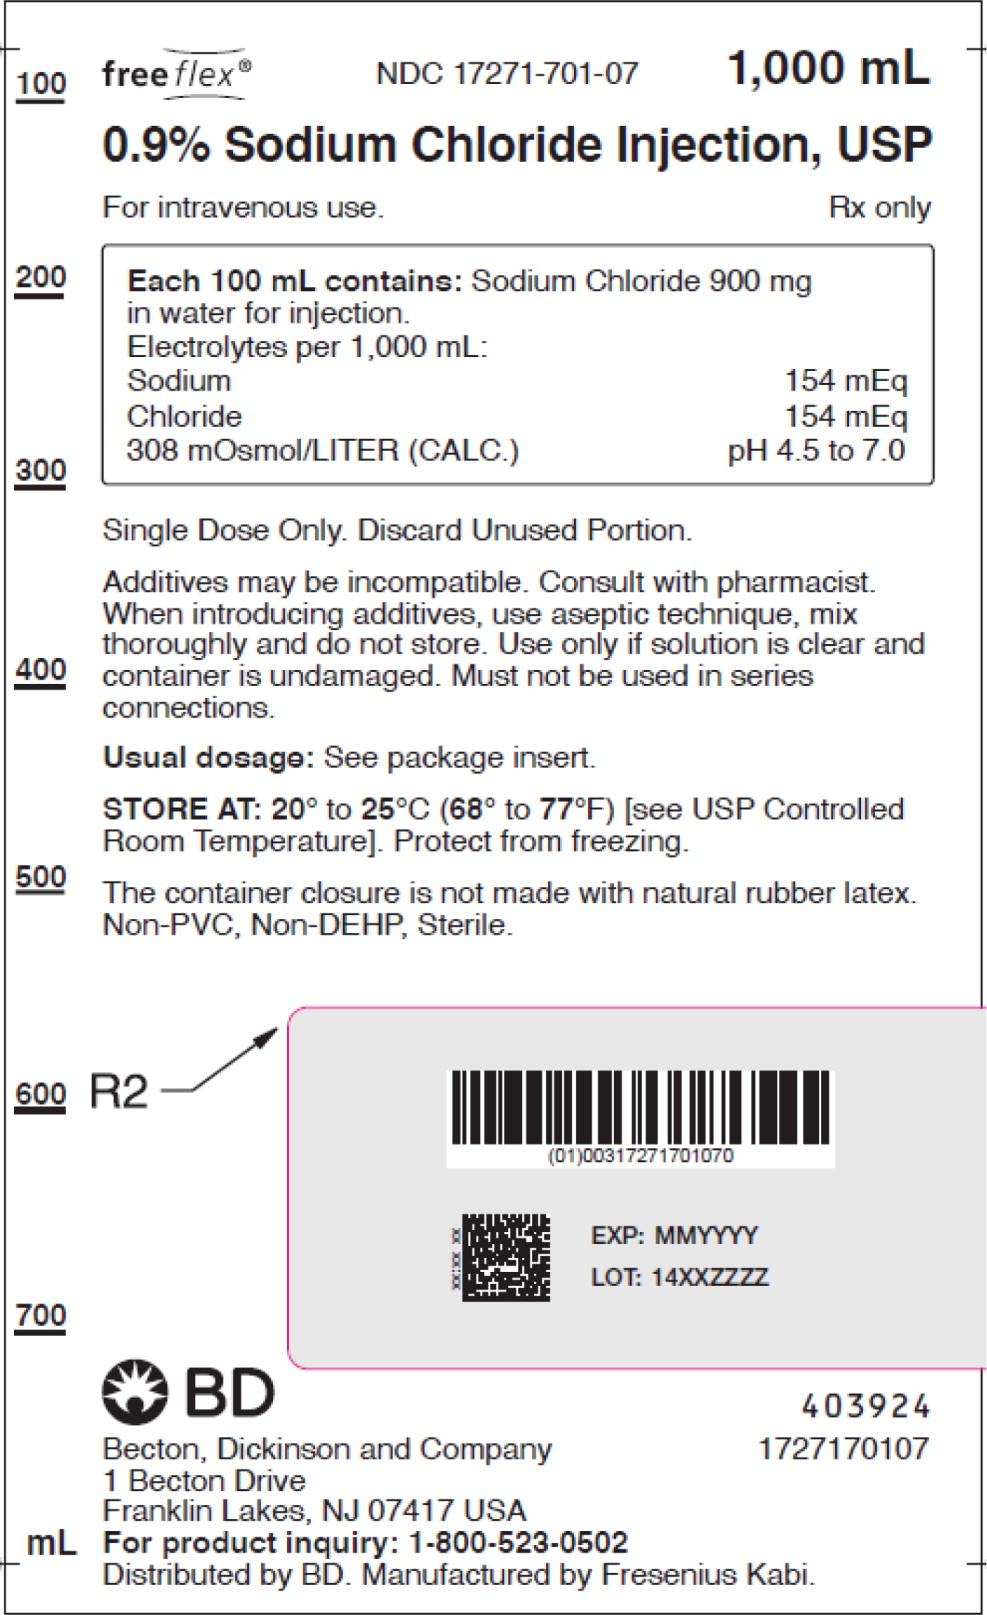 PACKAGE LABEL – PRINCIPAL DISPLAY PANEL – Sodium Chloride 1,000 mL Bag Label
